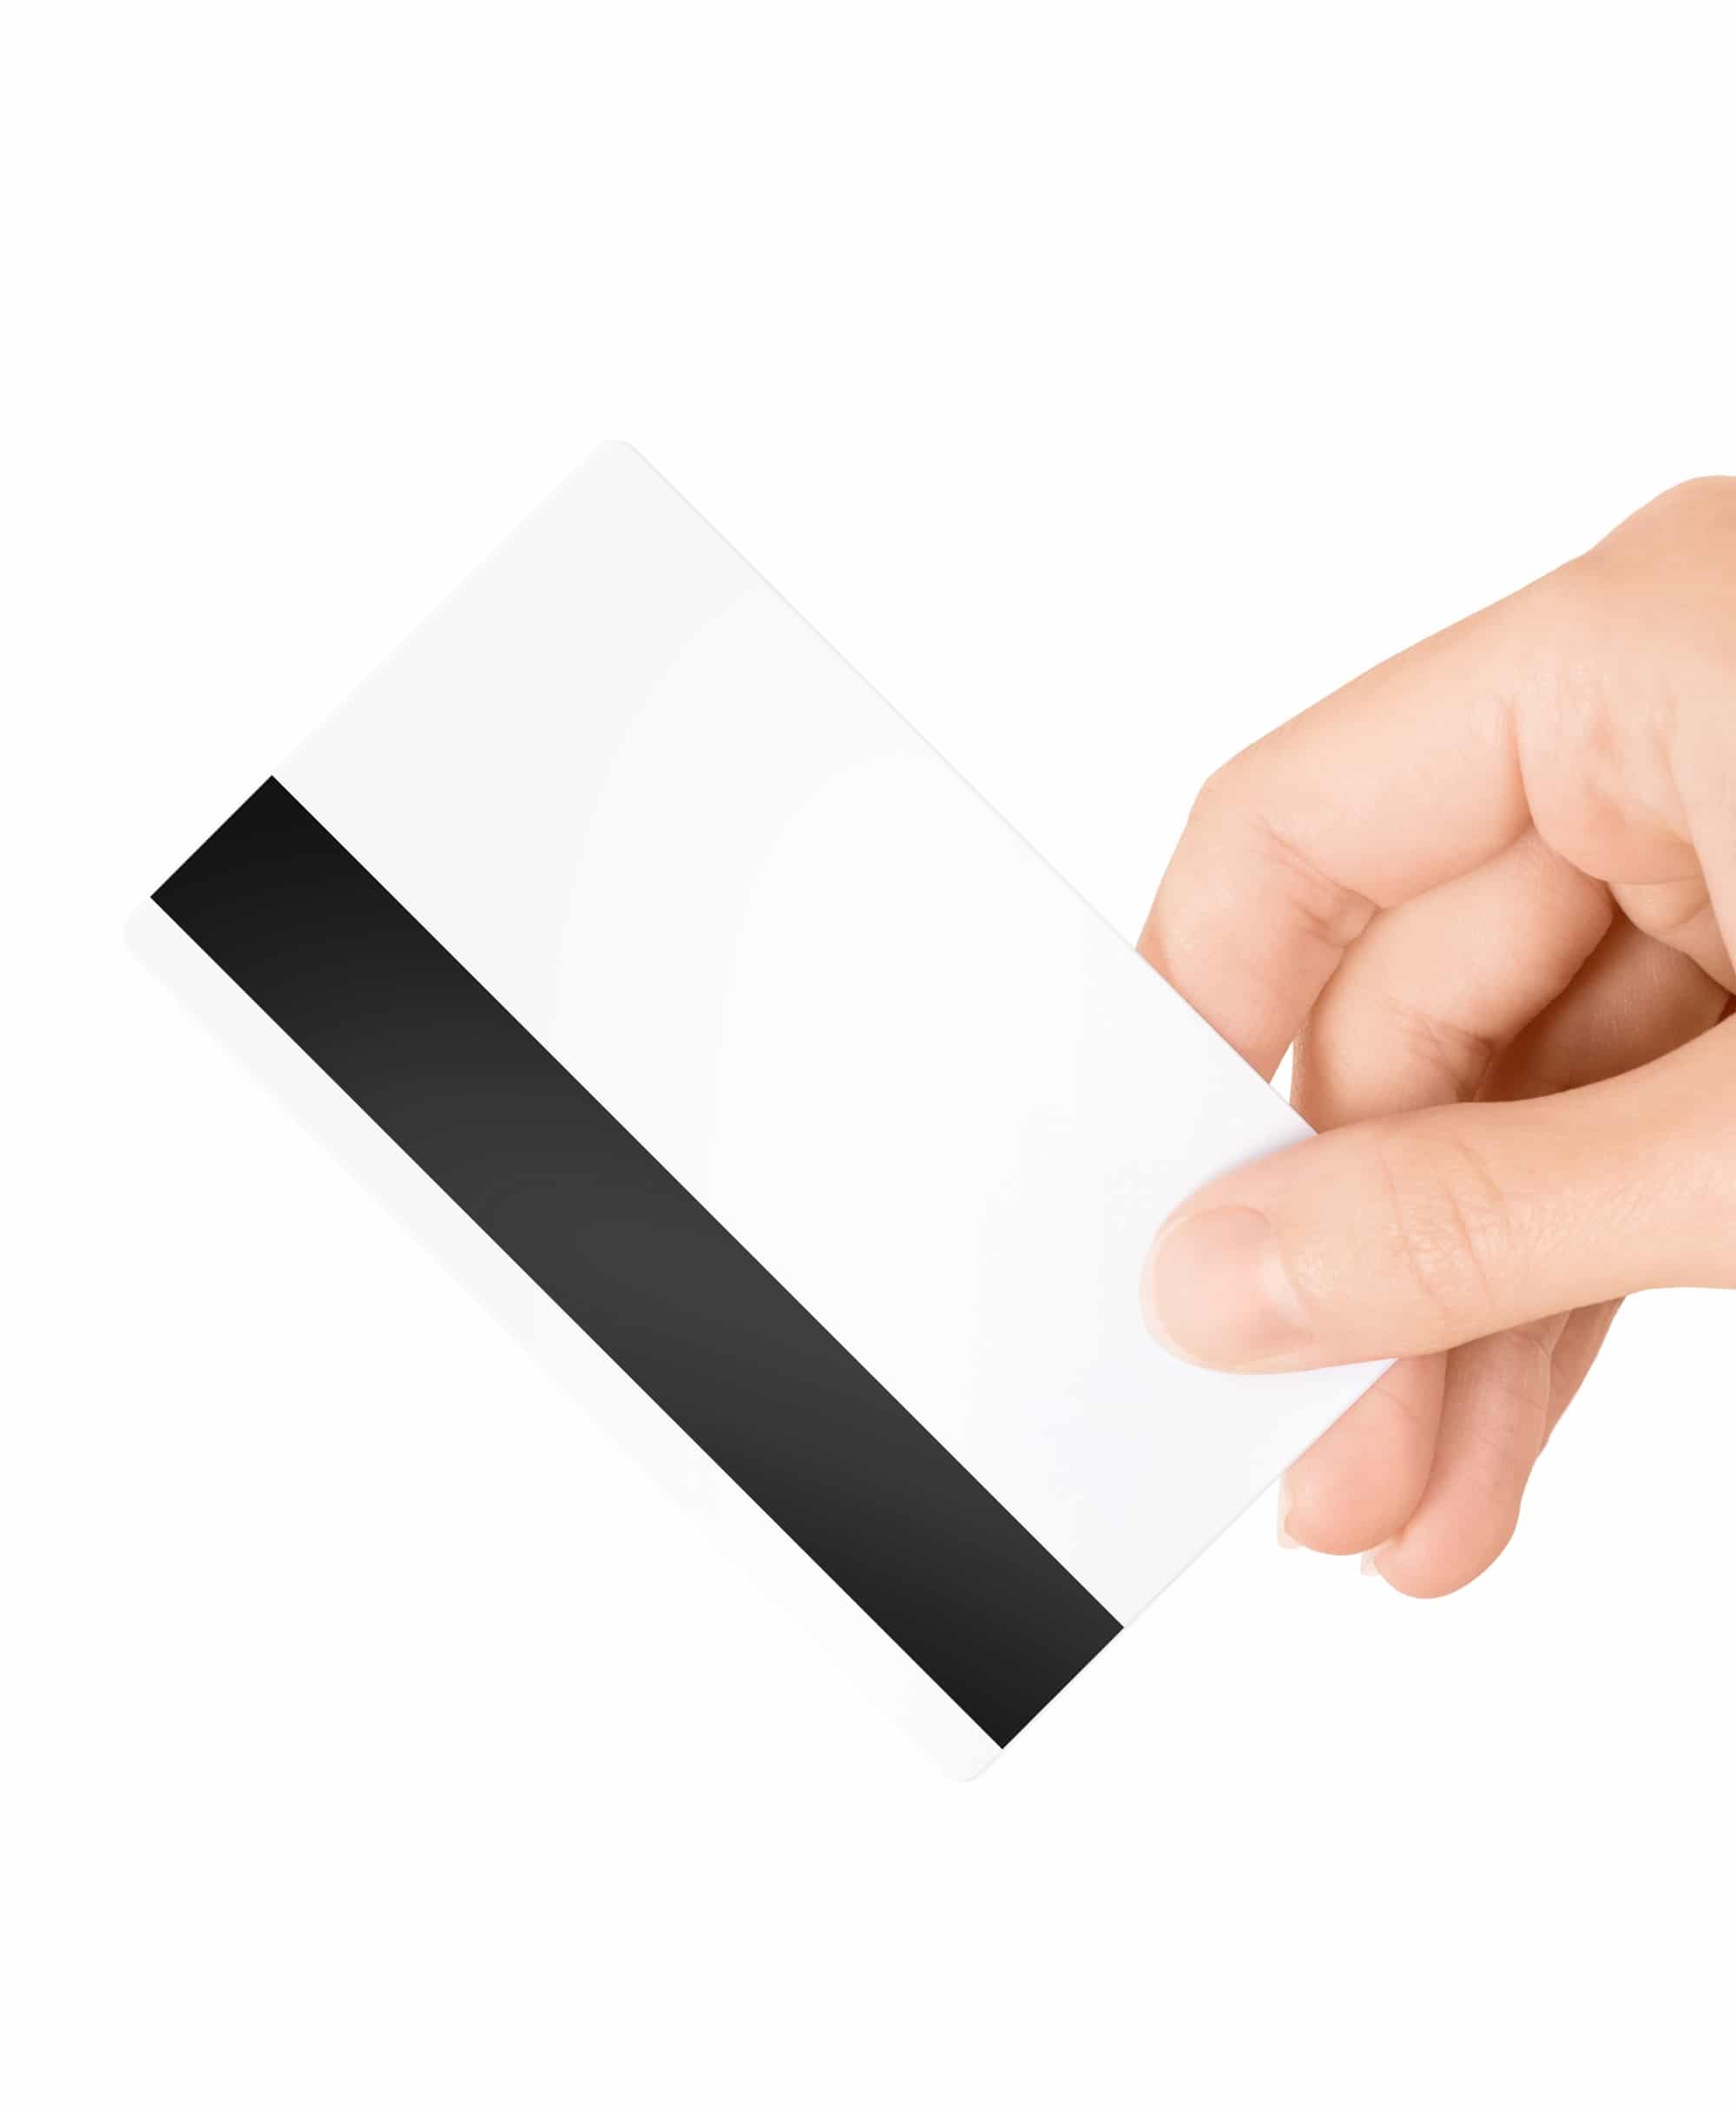 Select White PVC Cards 760 micron 